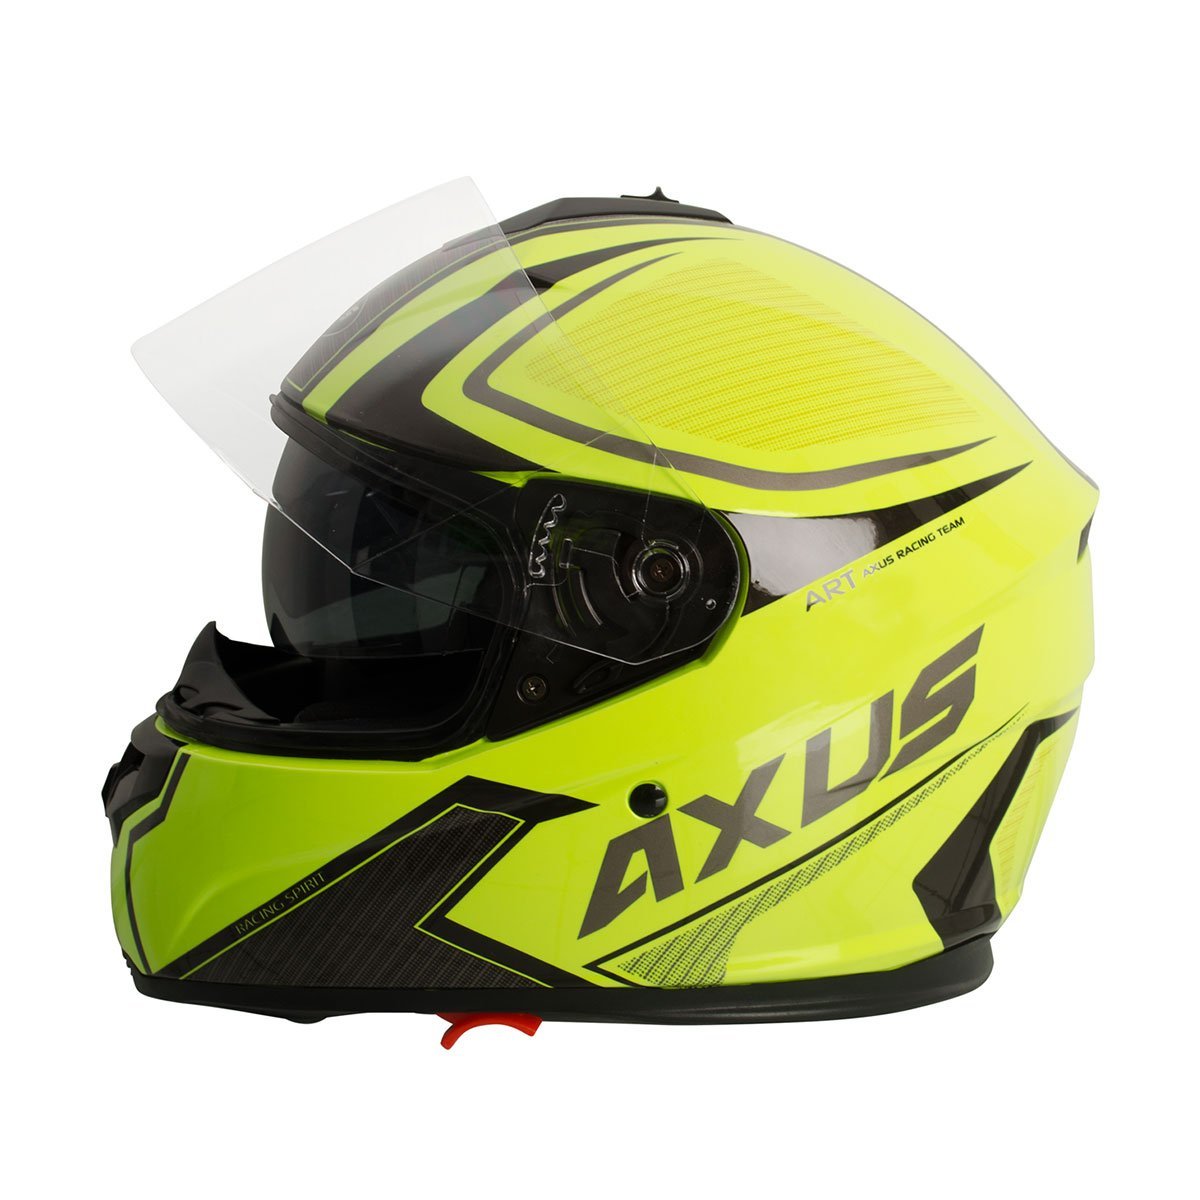 Casco Cerrado Doble Visor Racing Amarillo Axus - Grande